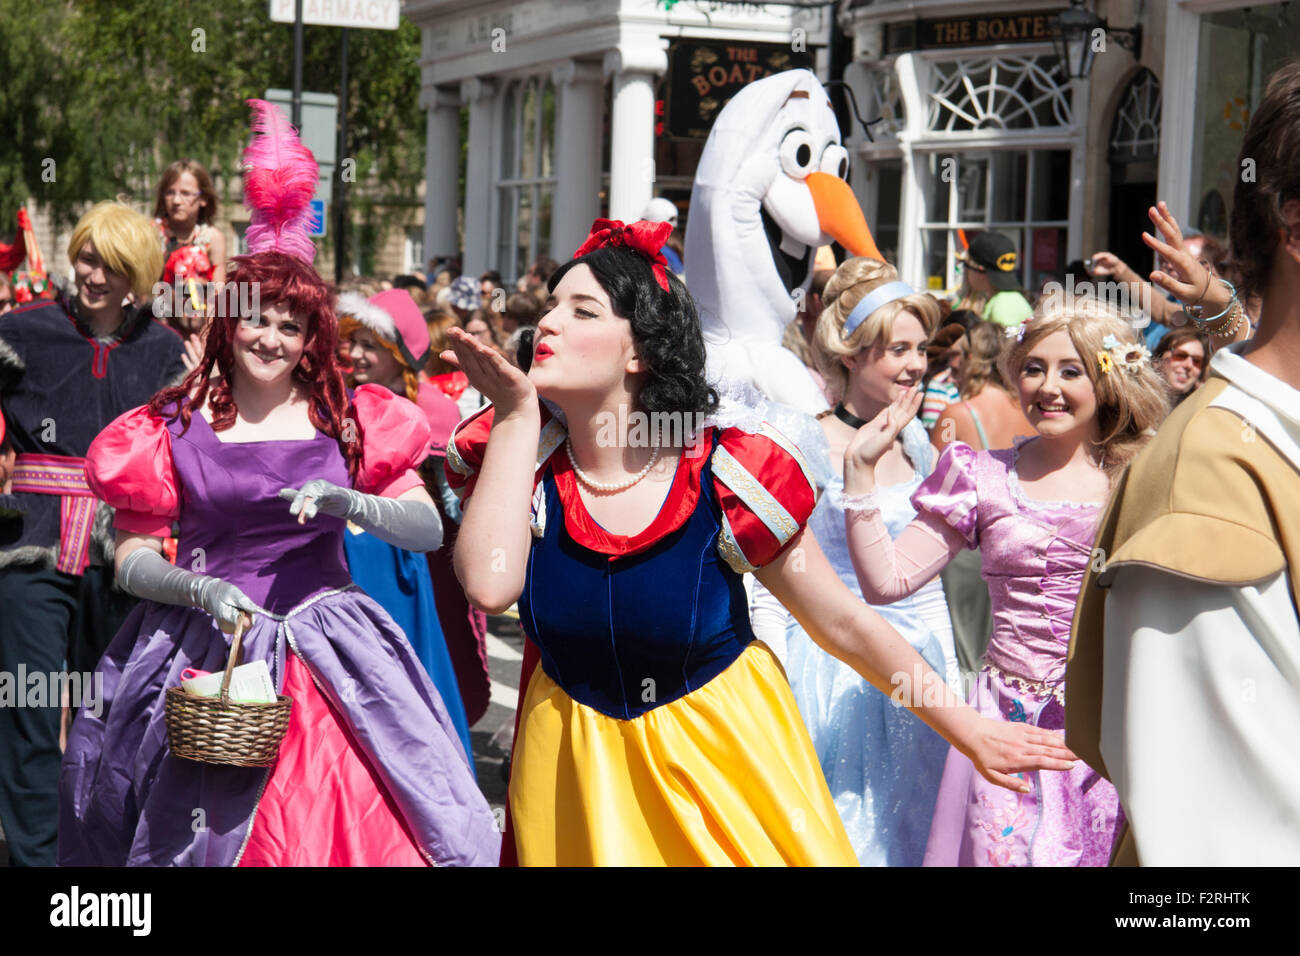 Donna in costume Disney soffia un bacio a spettatori durante la stagione estiva con sfilata di carnevale, Bath Regno Unito, Luglio 2015 Foto Stock